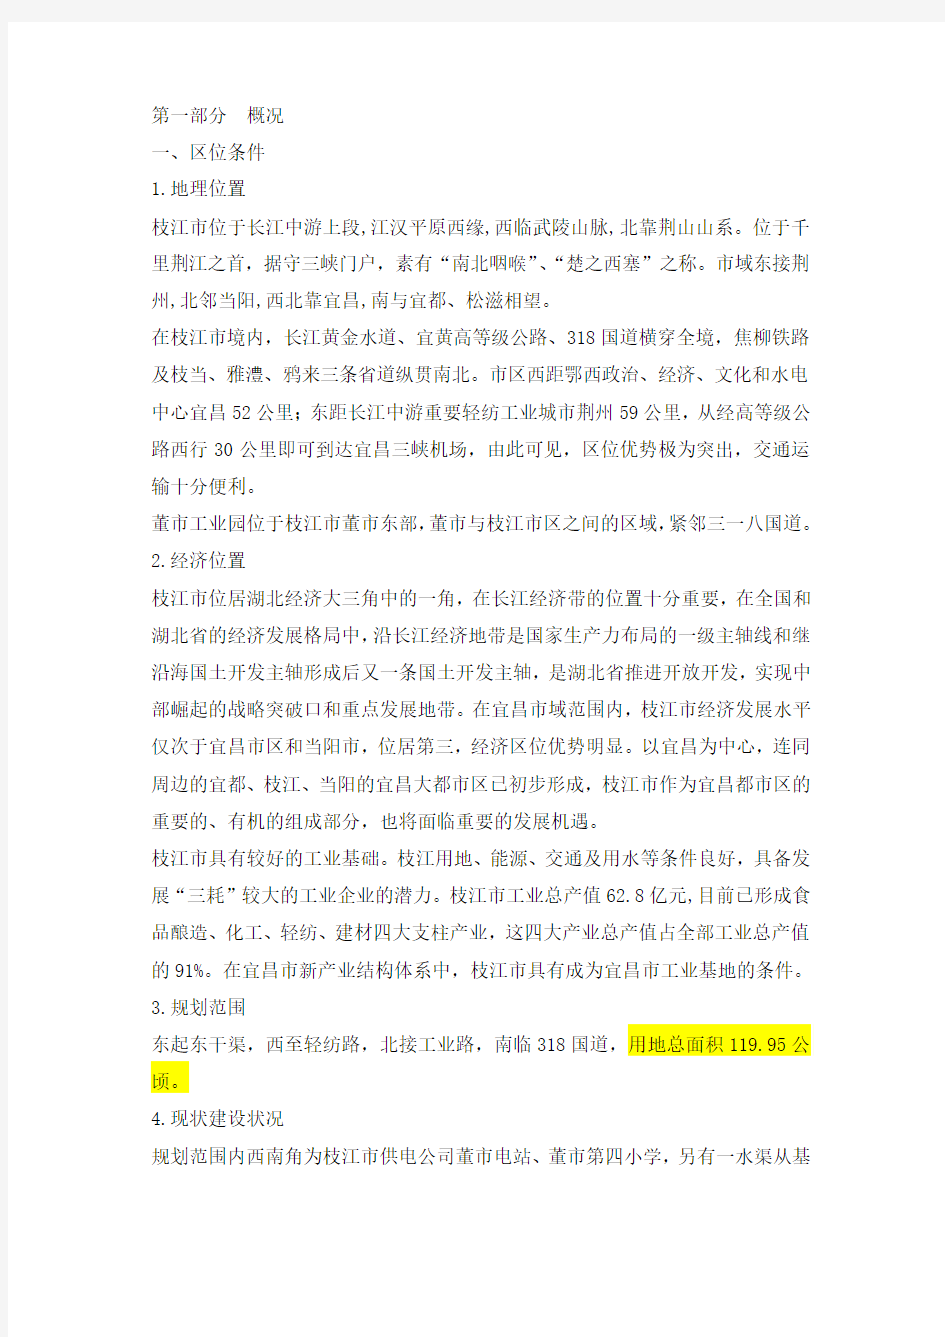 11枝江市董市工业园控制性详细规划说明书